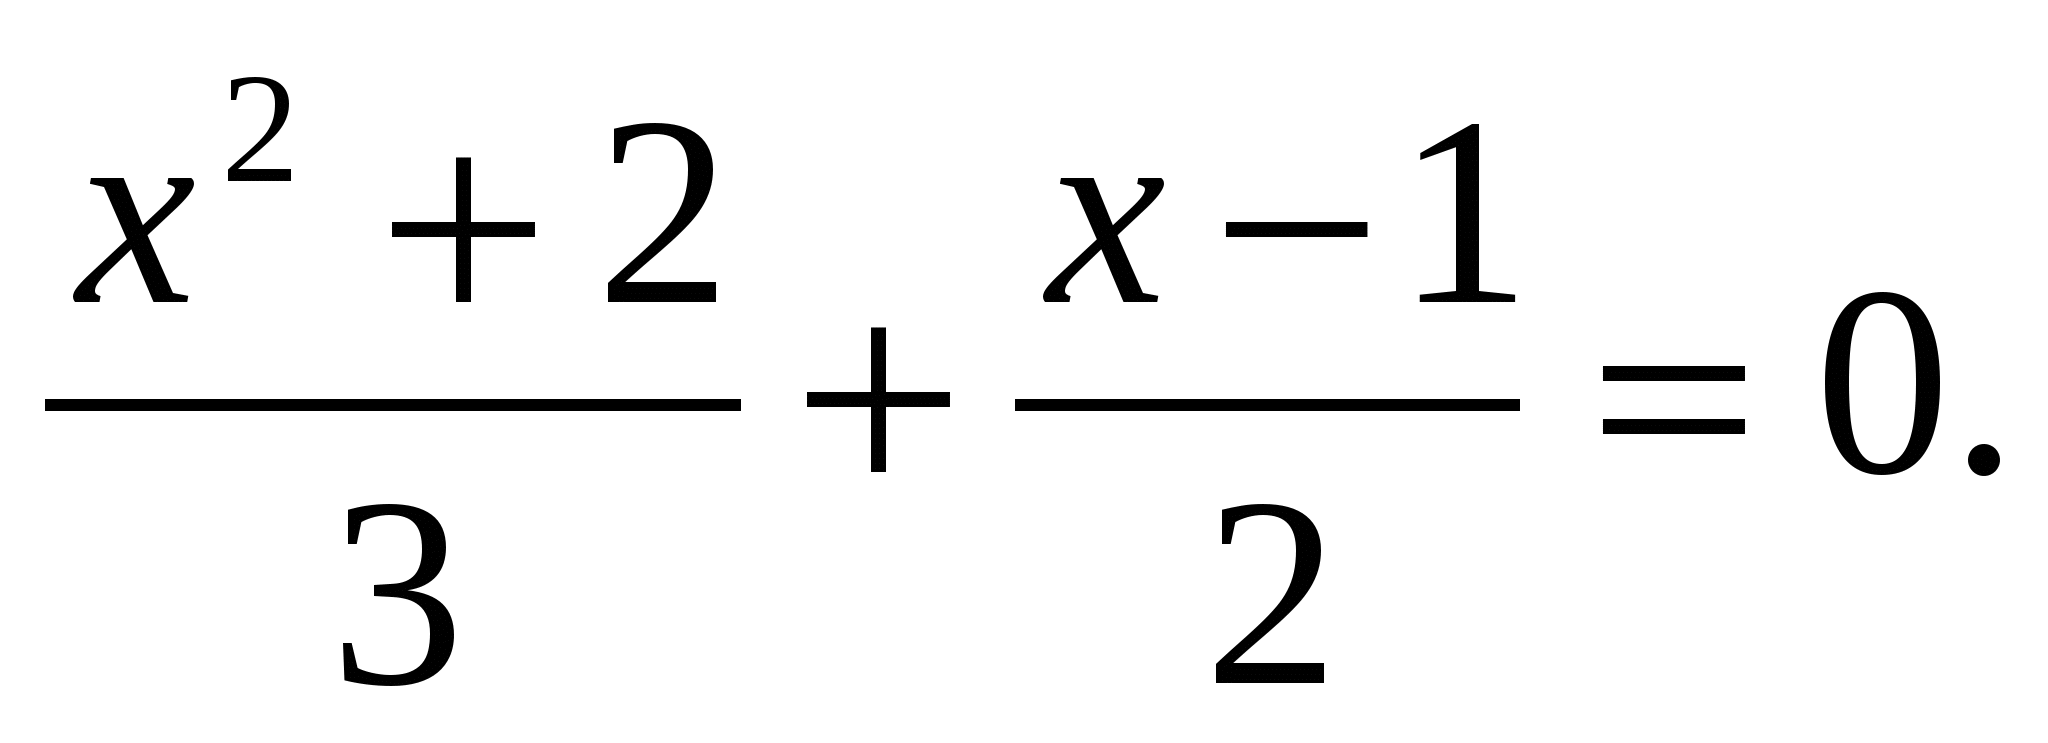 Конспект урока по алгебре на тему: Формулы корней квадратных уравнений (8 класс)